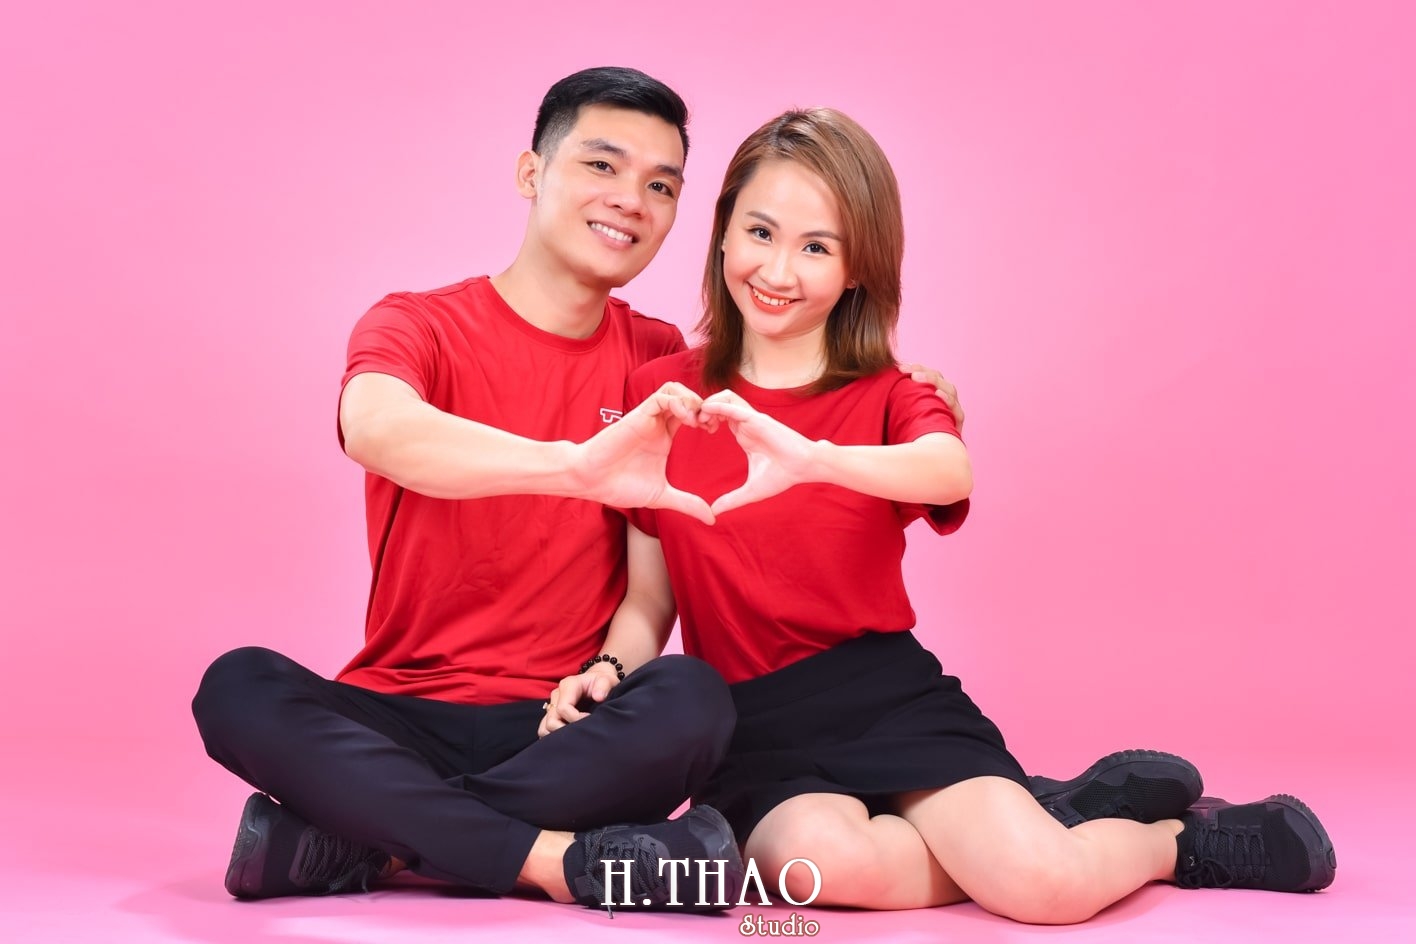 Anh couple 17 min - 3 concept chụp ảnh với người yêu đẹp mà chất - HThao Studio